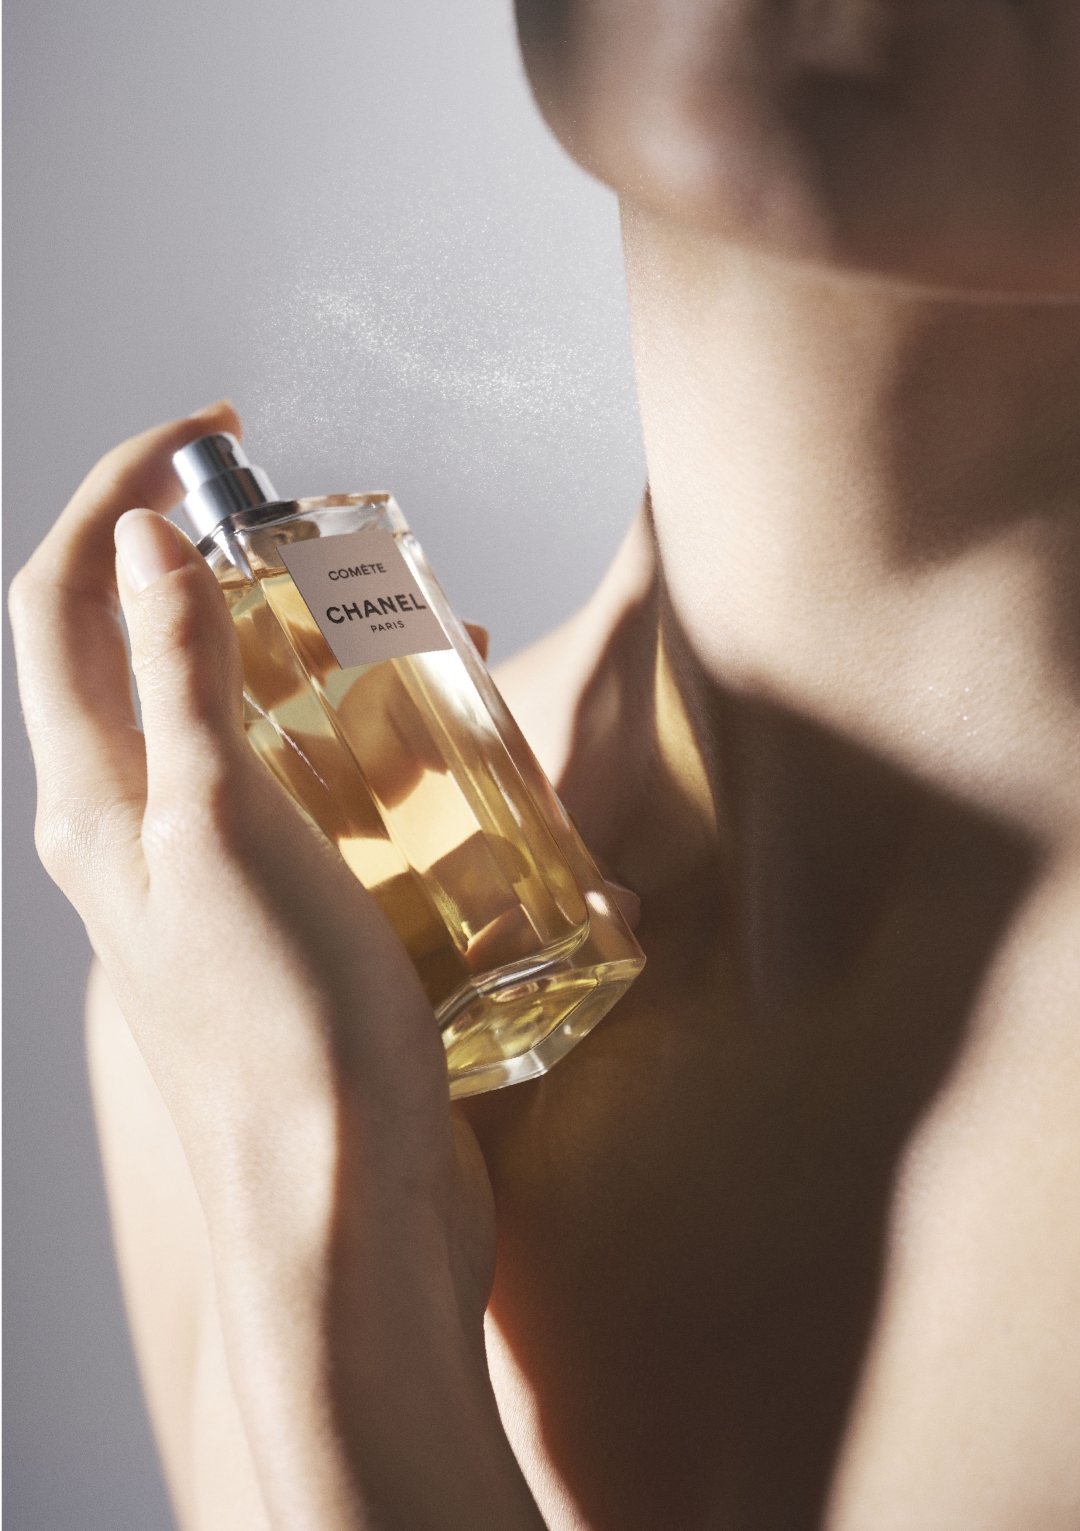 Modna hiša Chanel je pravkar izdala parfum, ki je popolnoma drugačen od vseh njenih značilnih parfumov